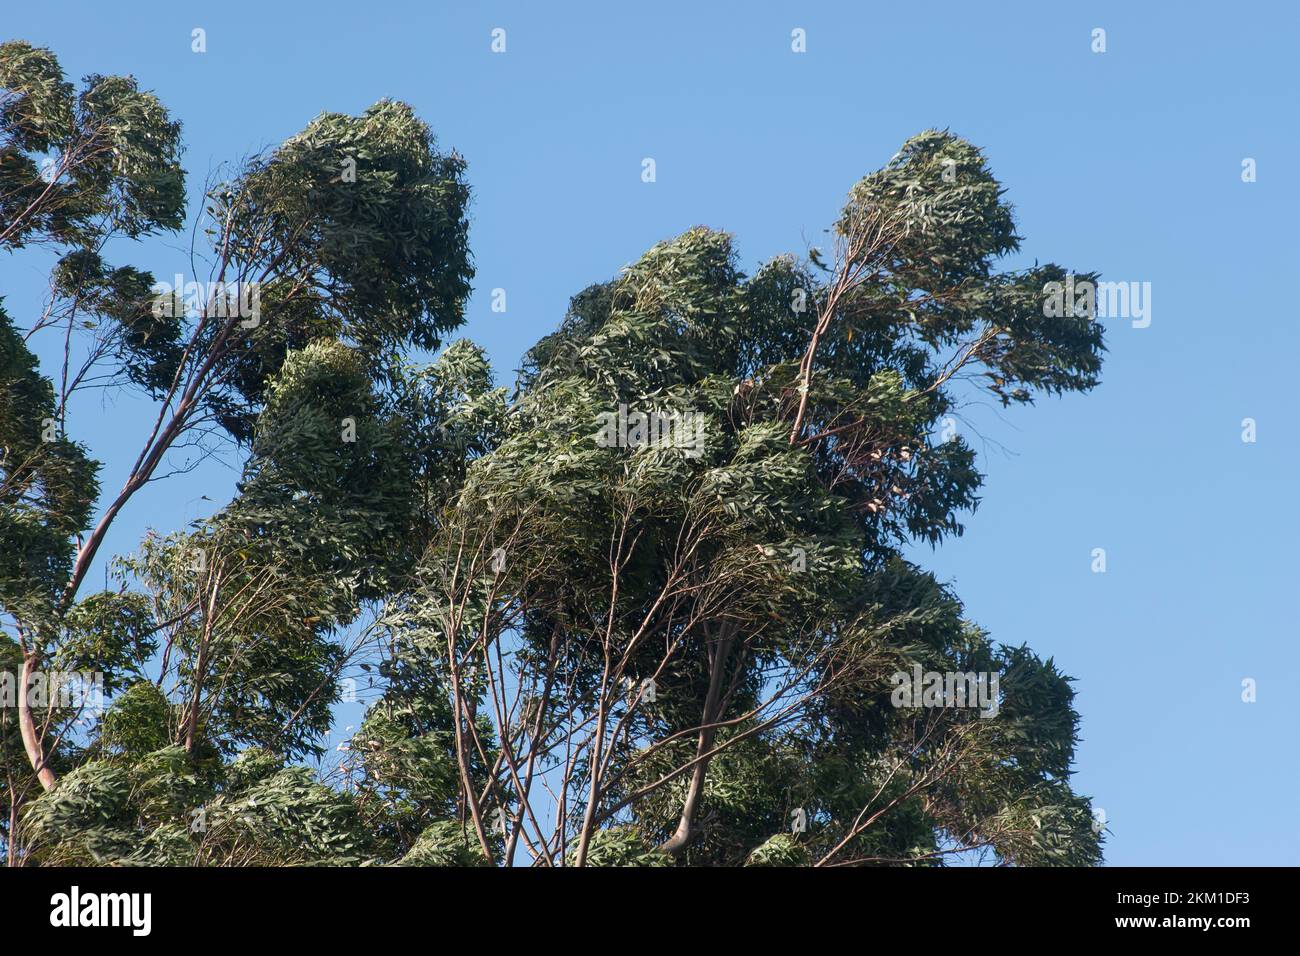 Die Spitzen von Eucalyptus grandis (Gummi)-Bäumen, die sich bei starkem Wind seitlich biegen. Subtropischer Regenwald, Queenslans, Australien. Blauer Himmel, Frühlingswetter. Stockfoto